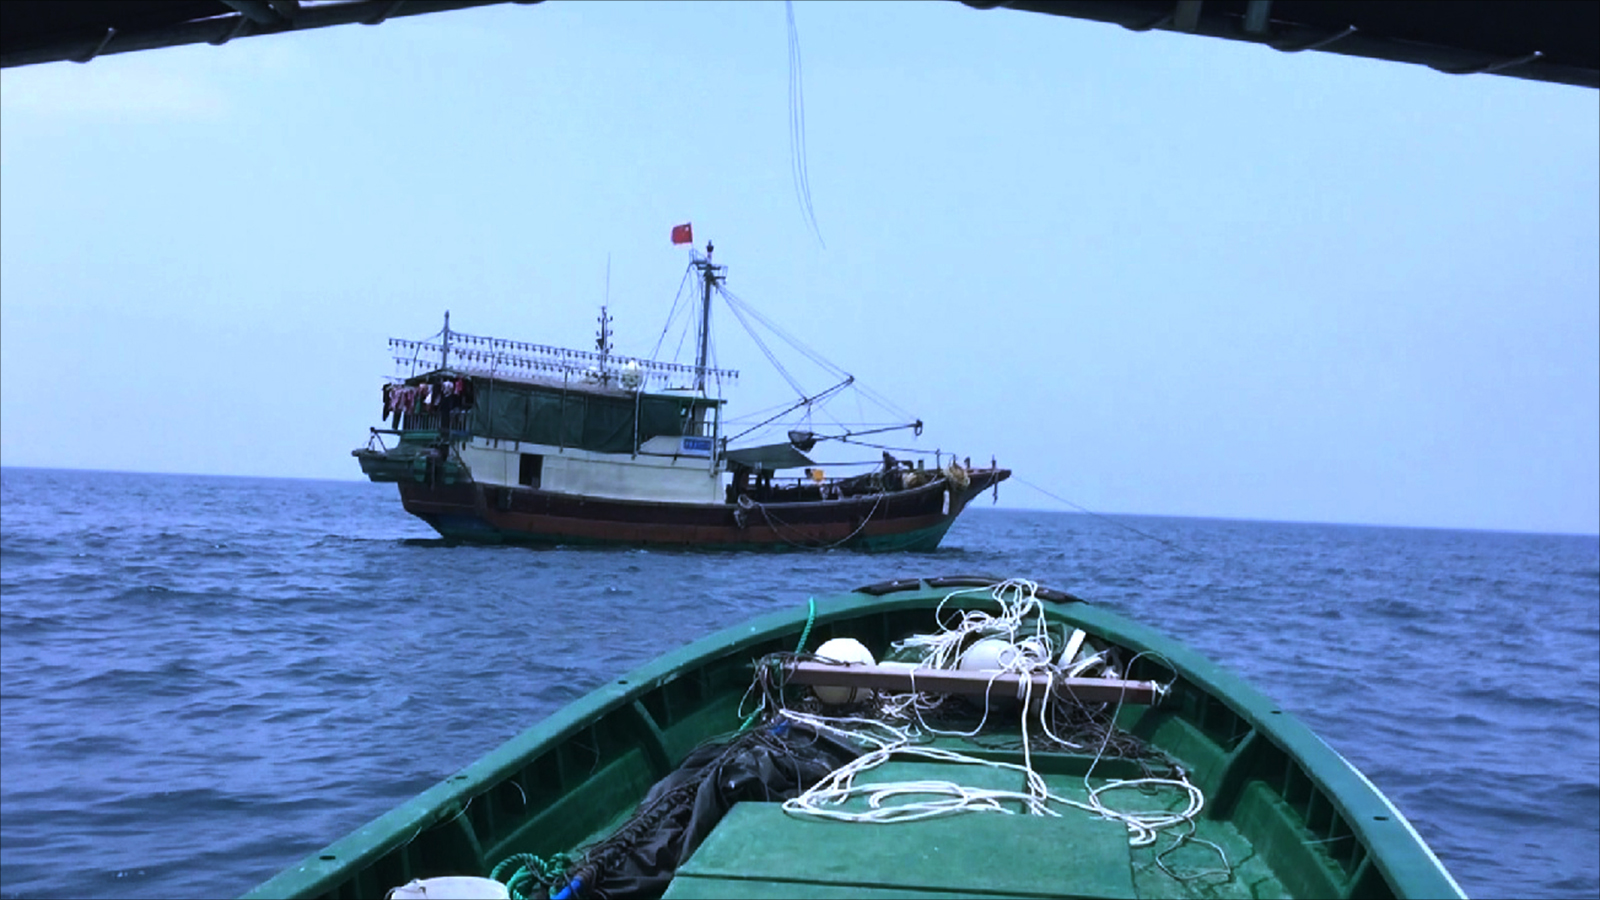 ‪الصيد في بحر جنوب الصين يوفر 70% منال احتياجات السمكية للبلاد‬ (الجزيرة)